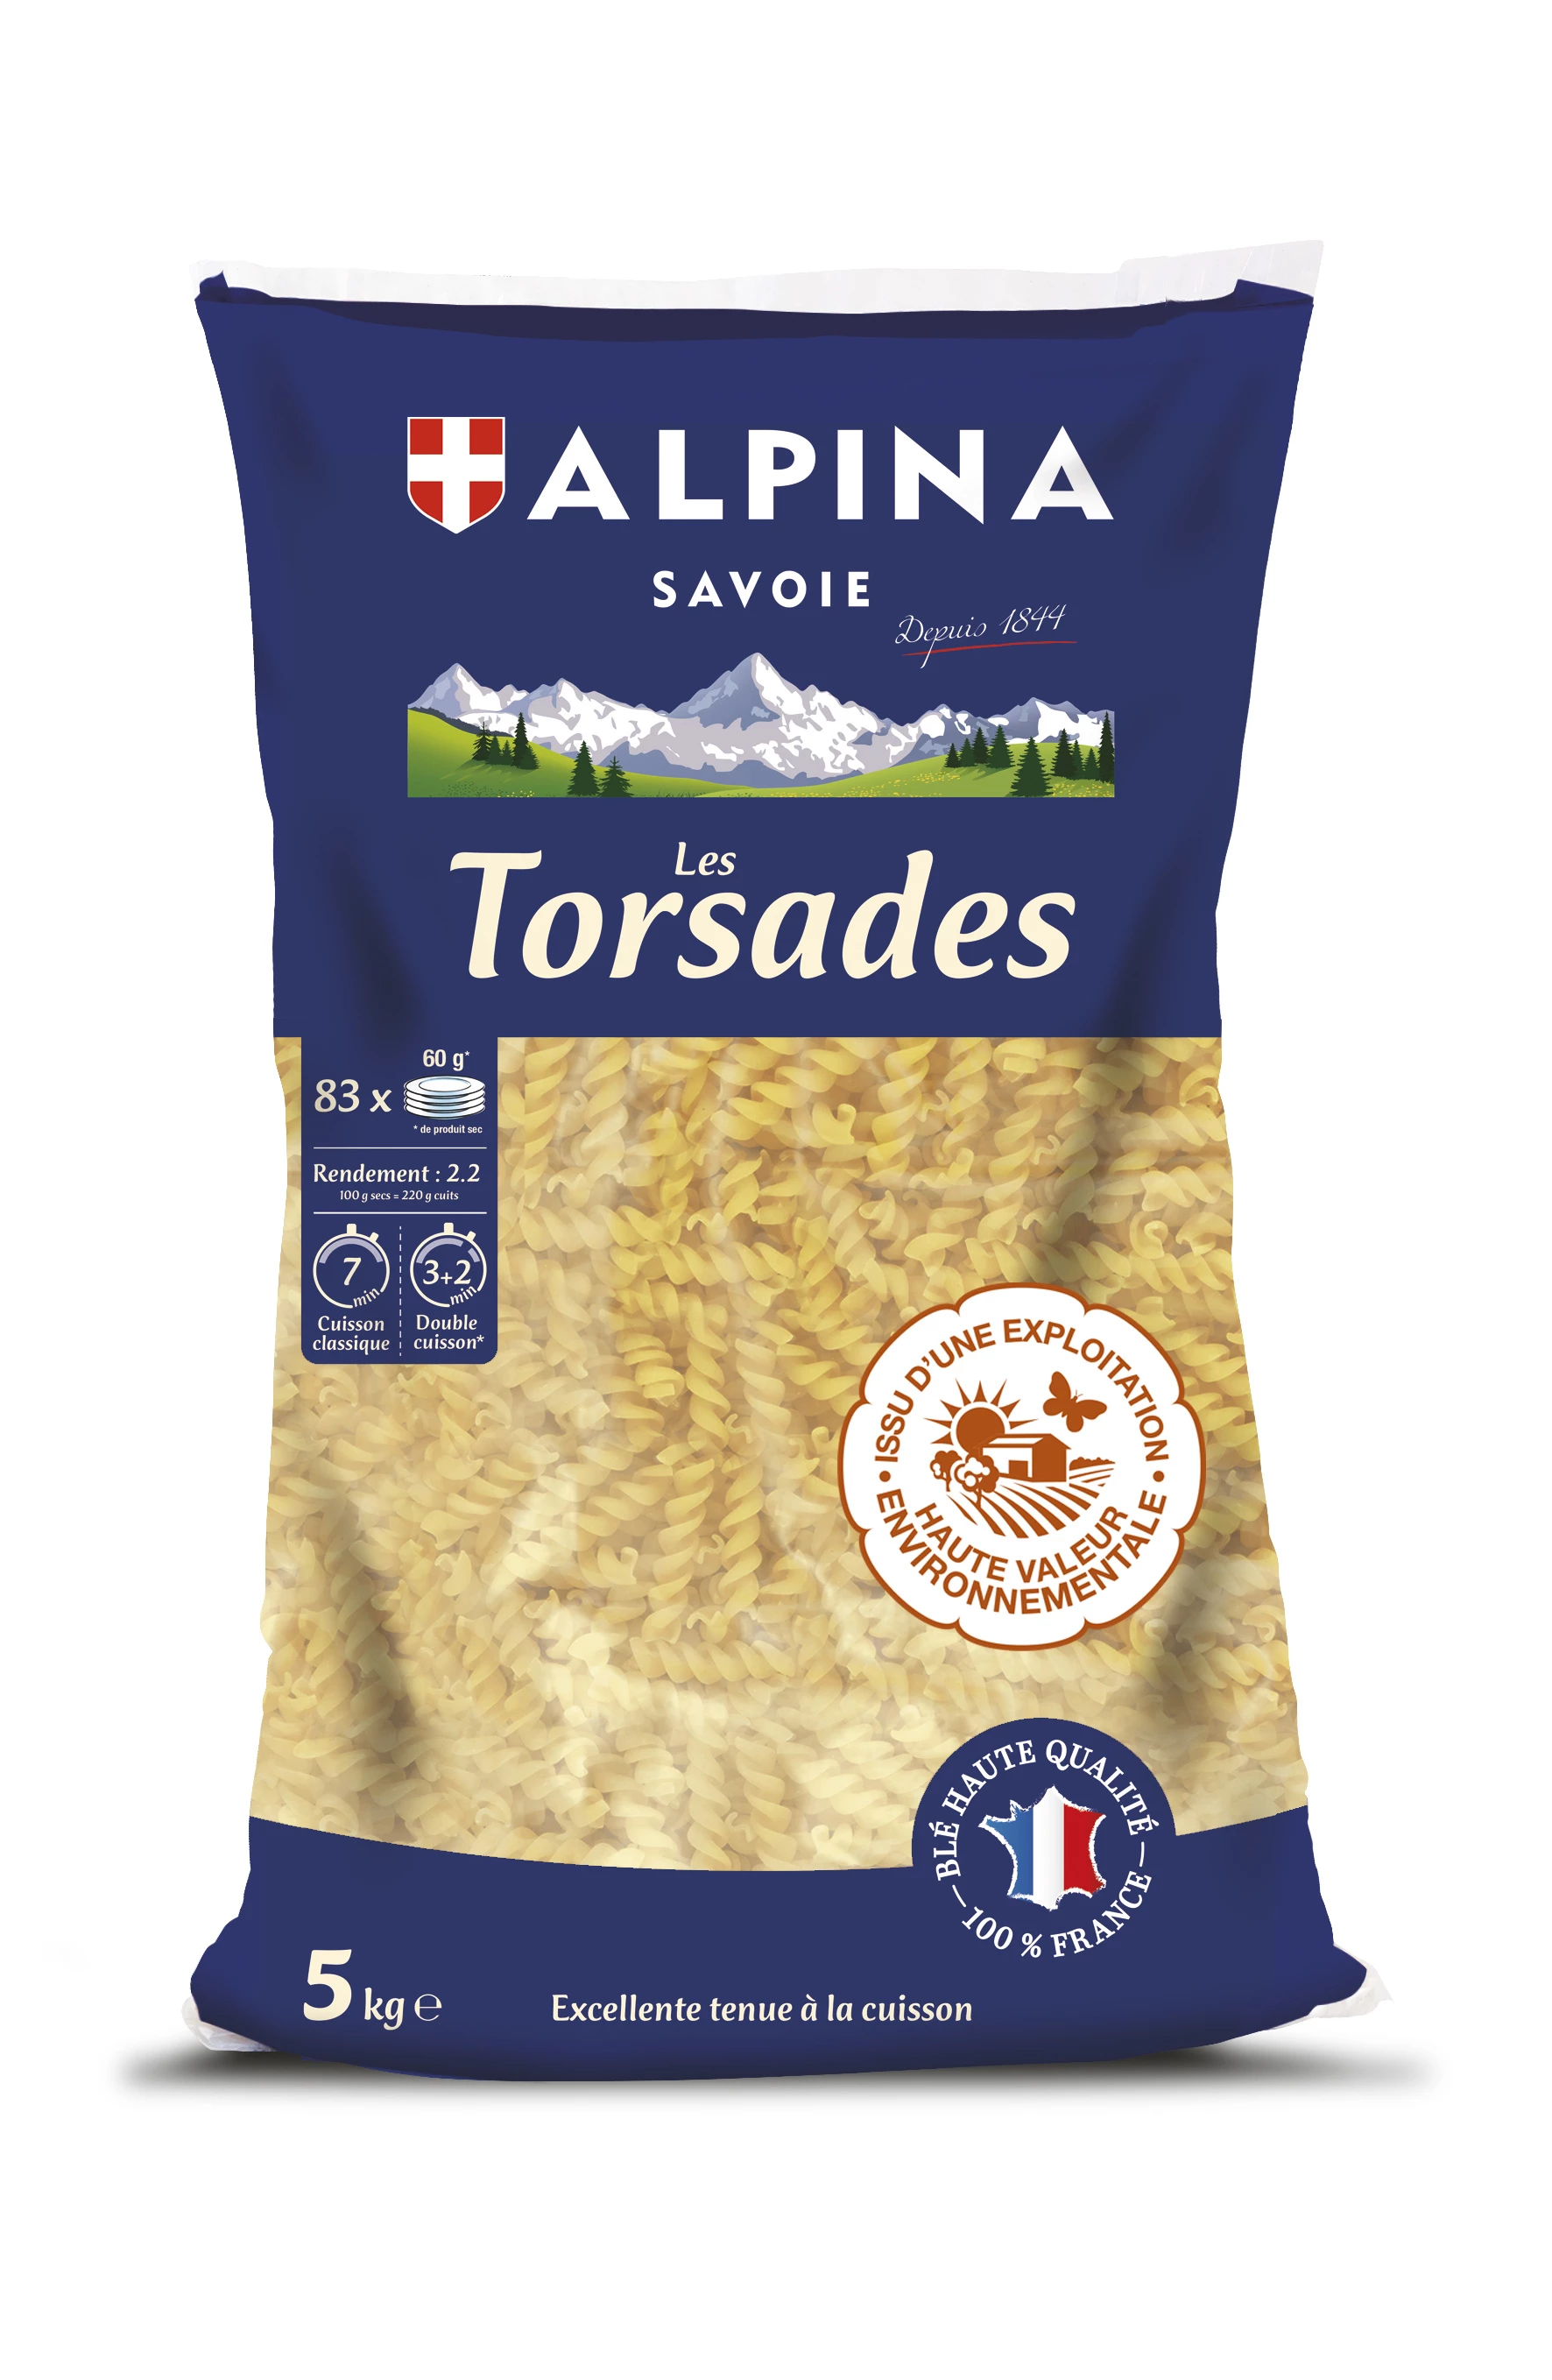 Twisted Pasta, 5kg - ALPINA SAVOIE